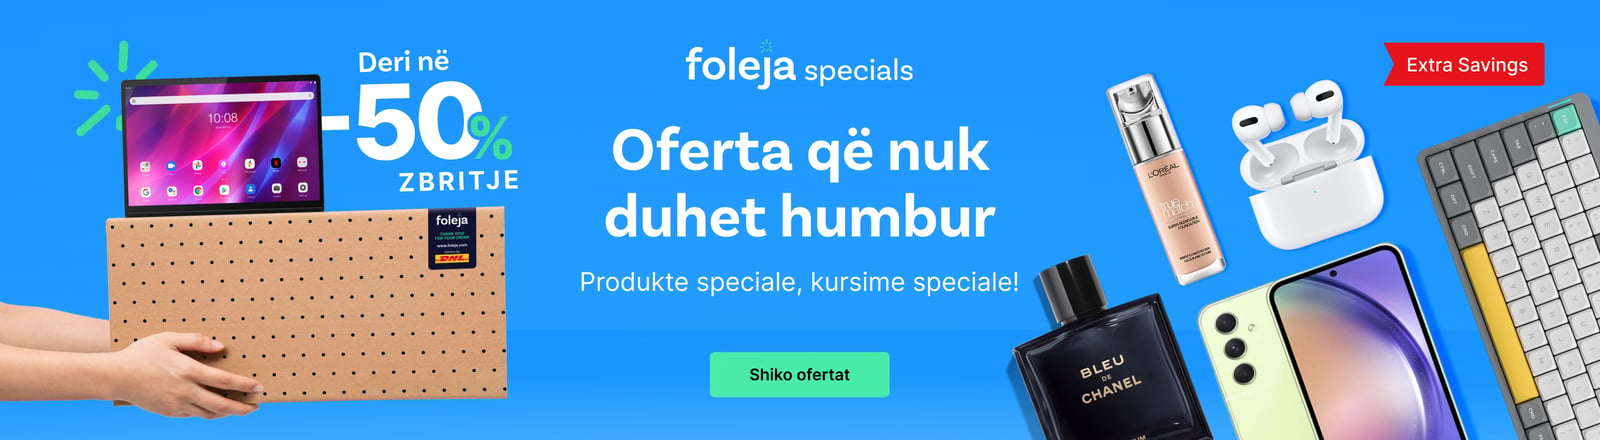 foleja-specials-web